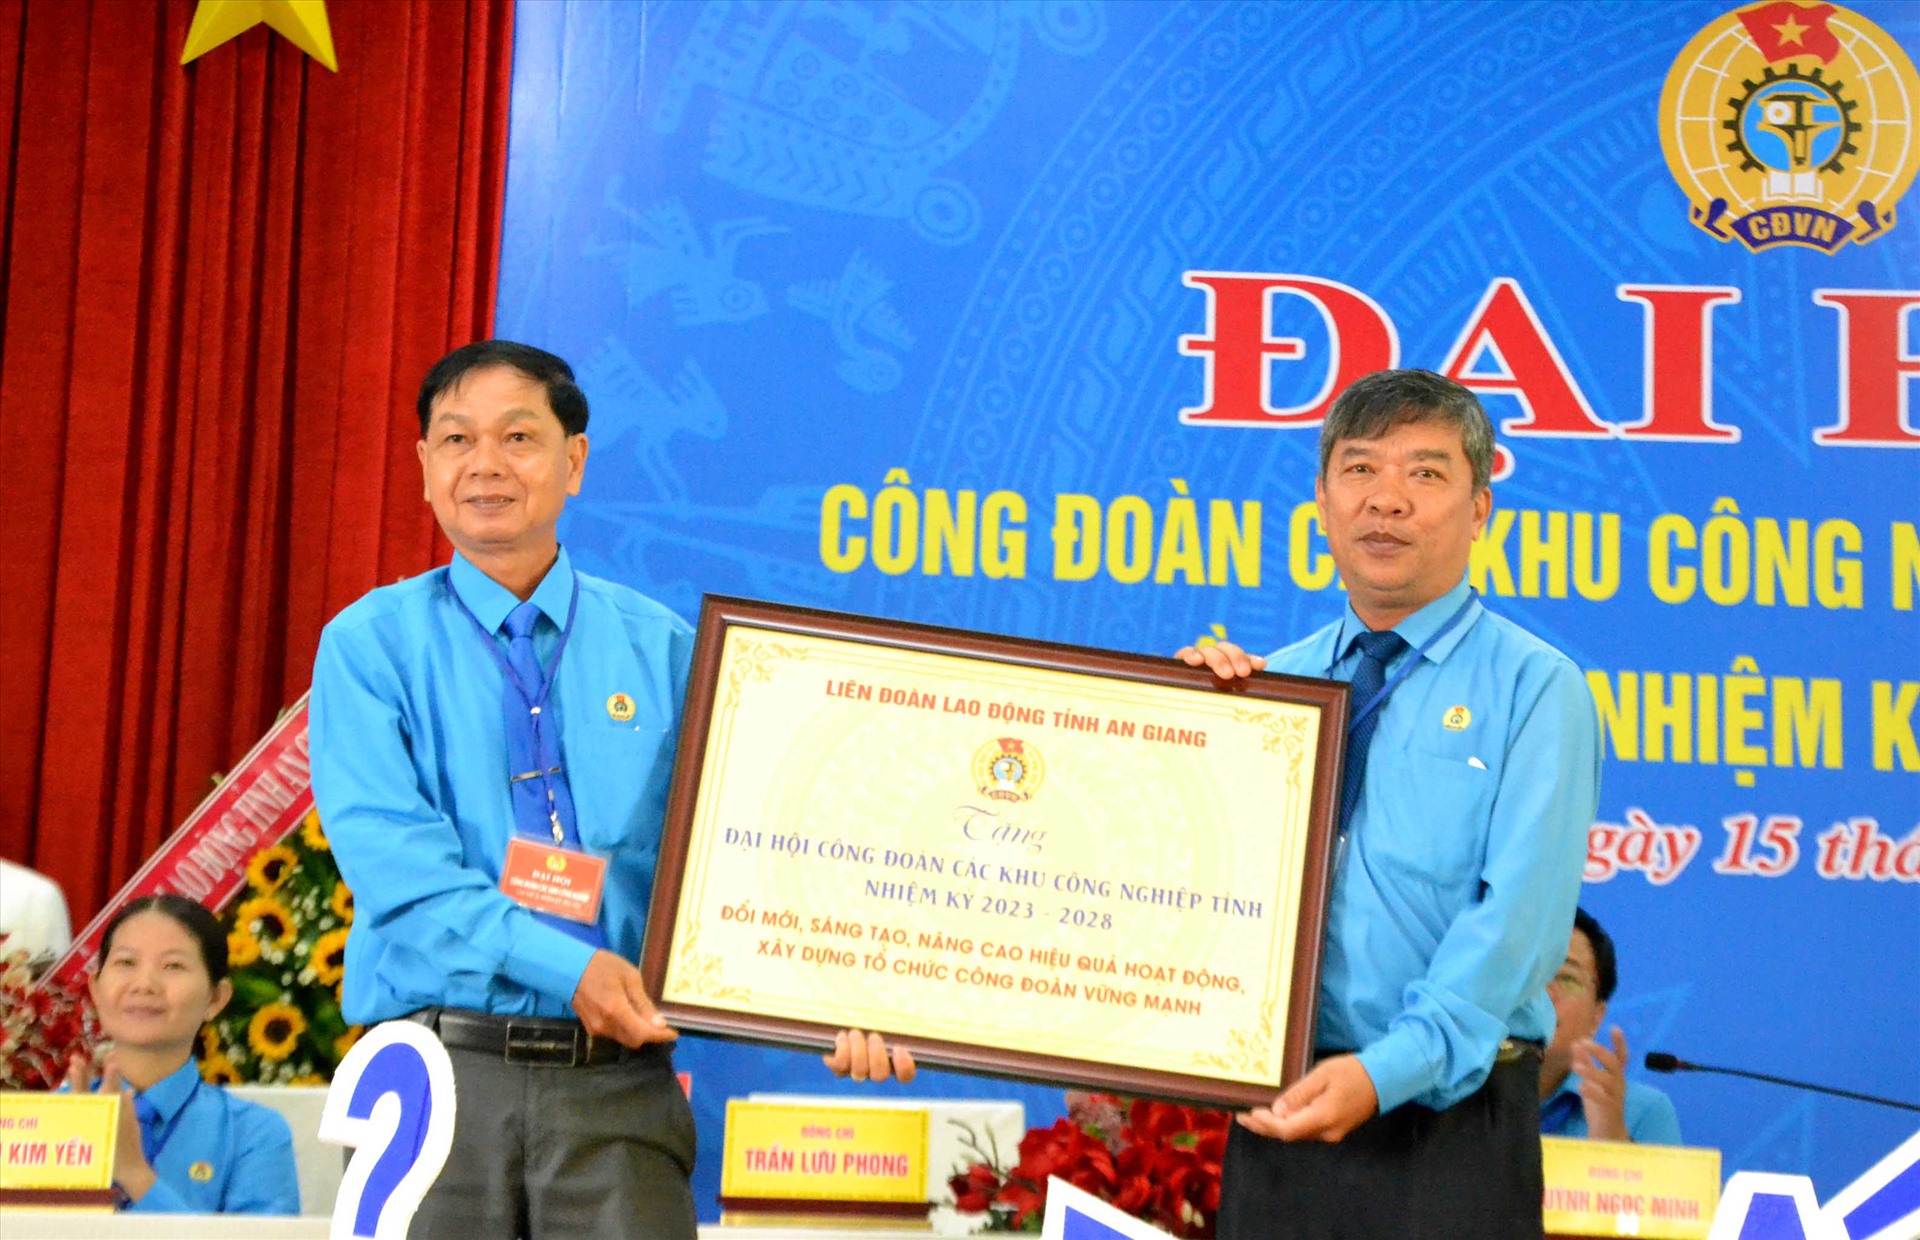 Phó Chủ tịch LĐLĐ tỉnh An Giang tặng bức tranh cho Đại hội. Ảnh: Lâm Điền